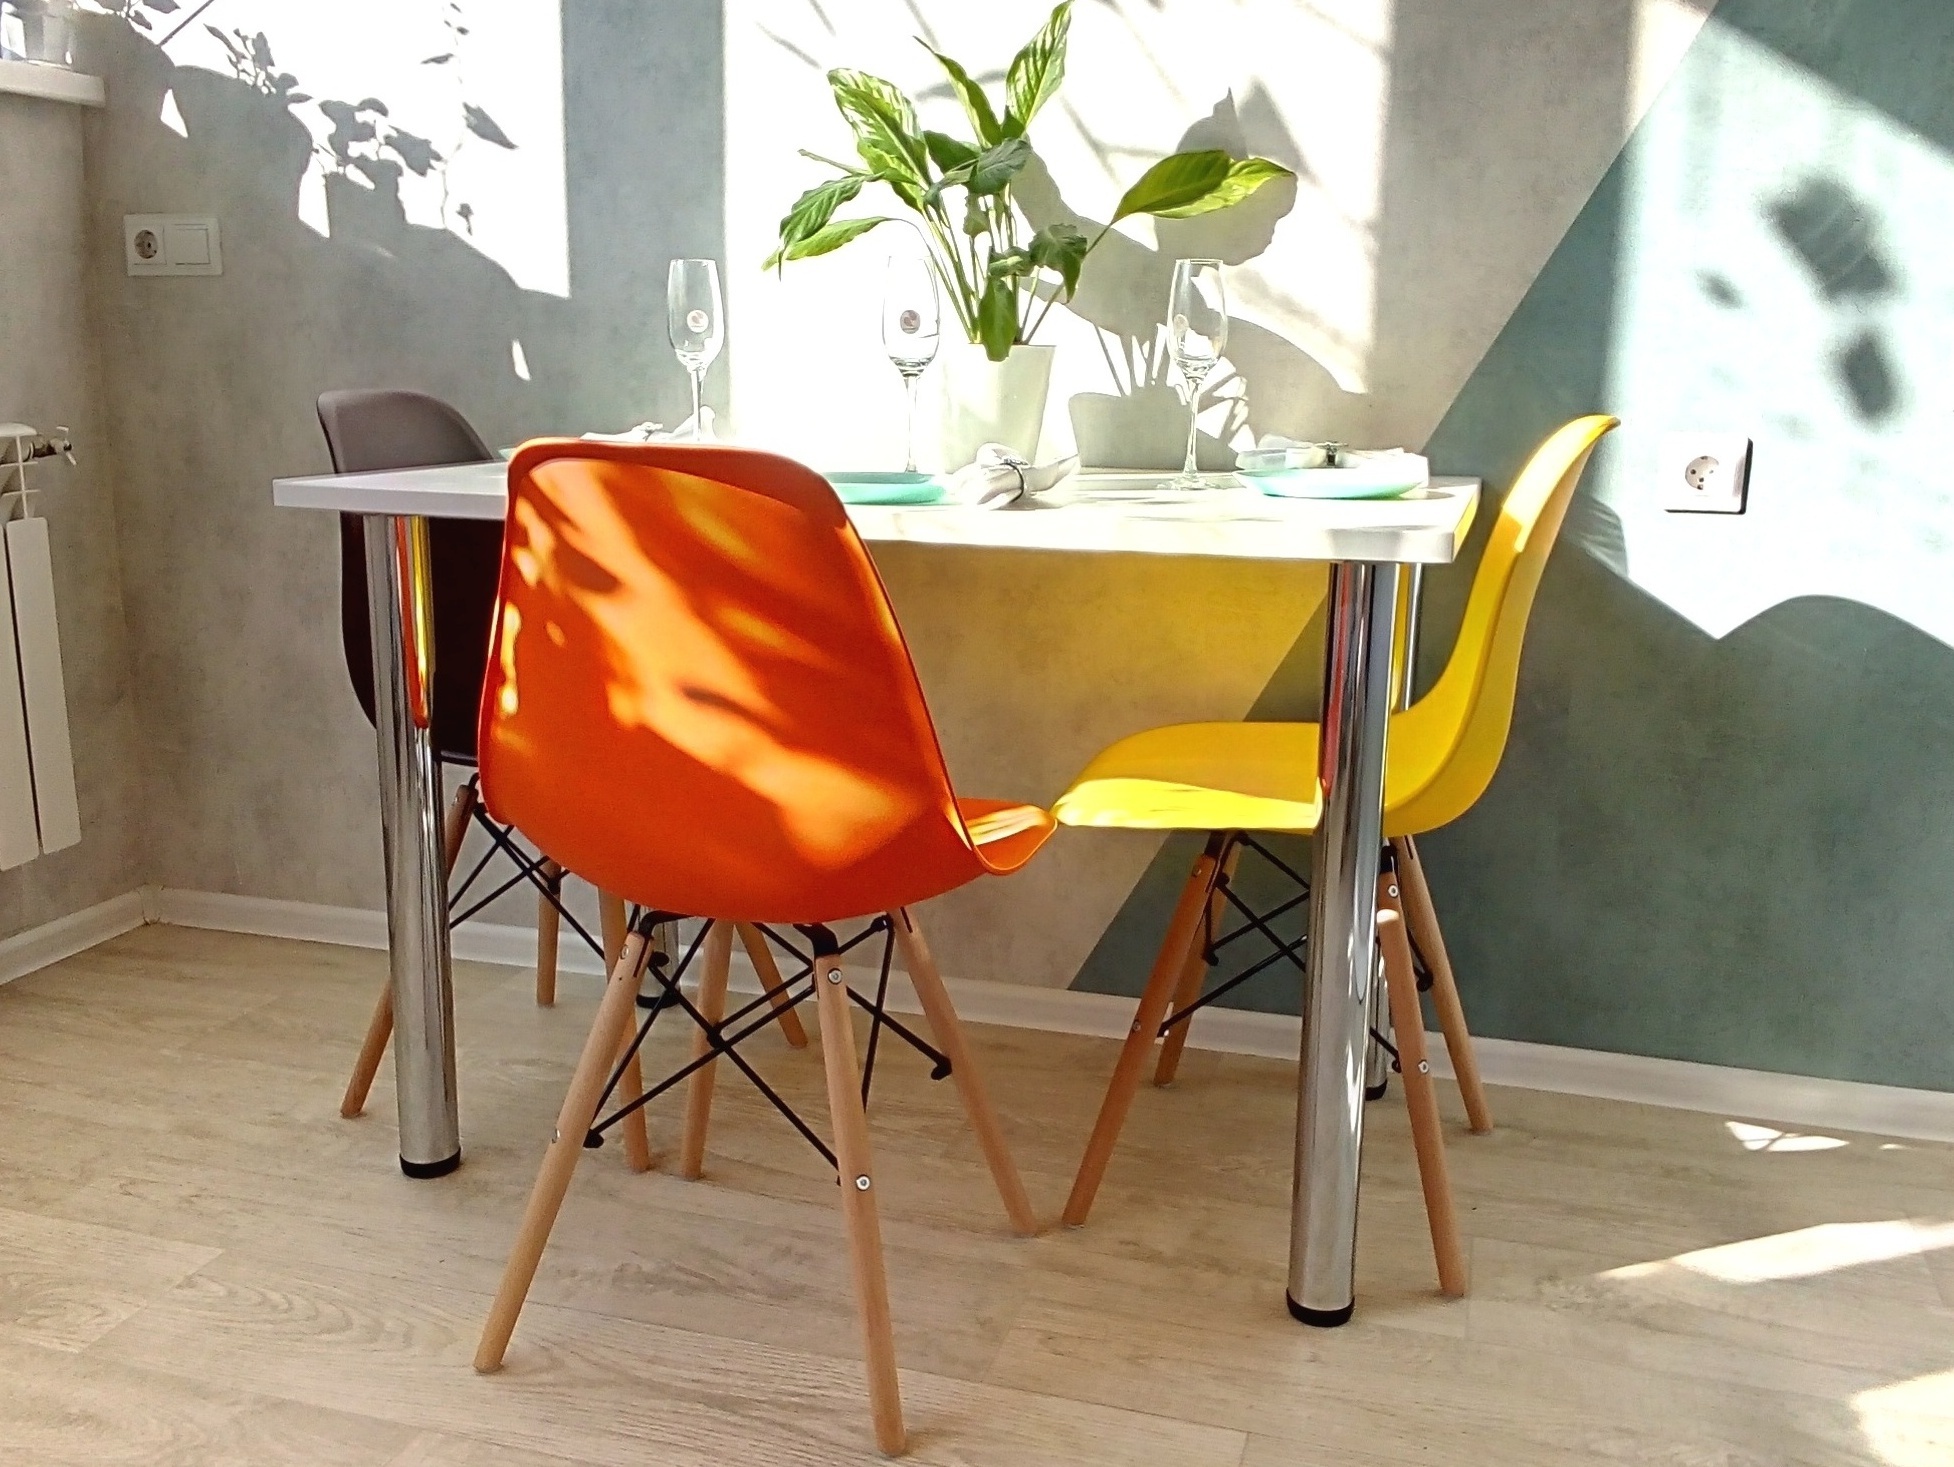 Купить столы и стулья от производителя в сети магазинов мебели Мир столов и стульев в СПб